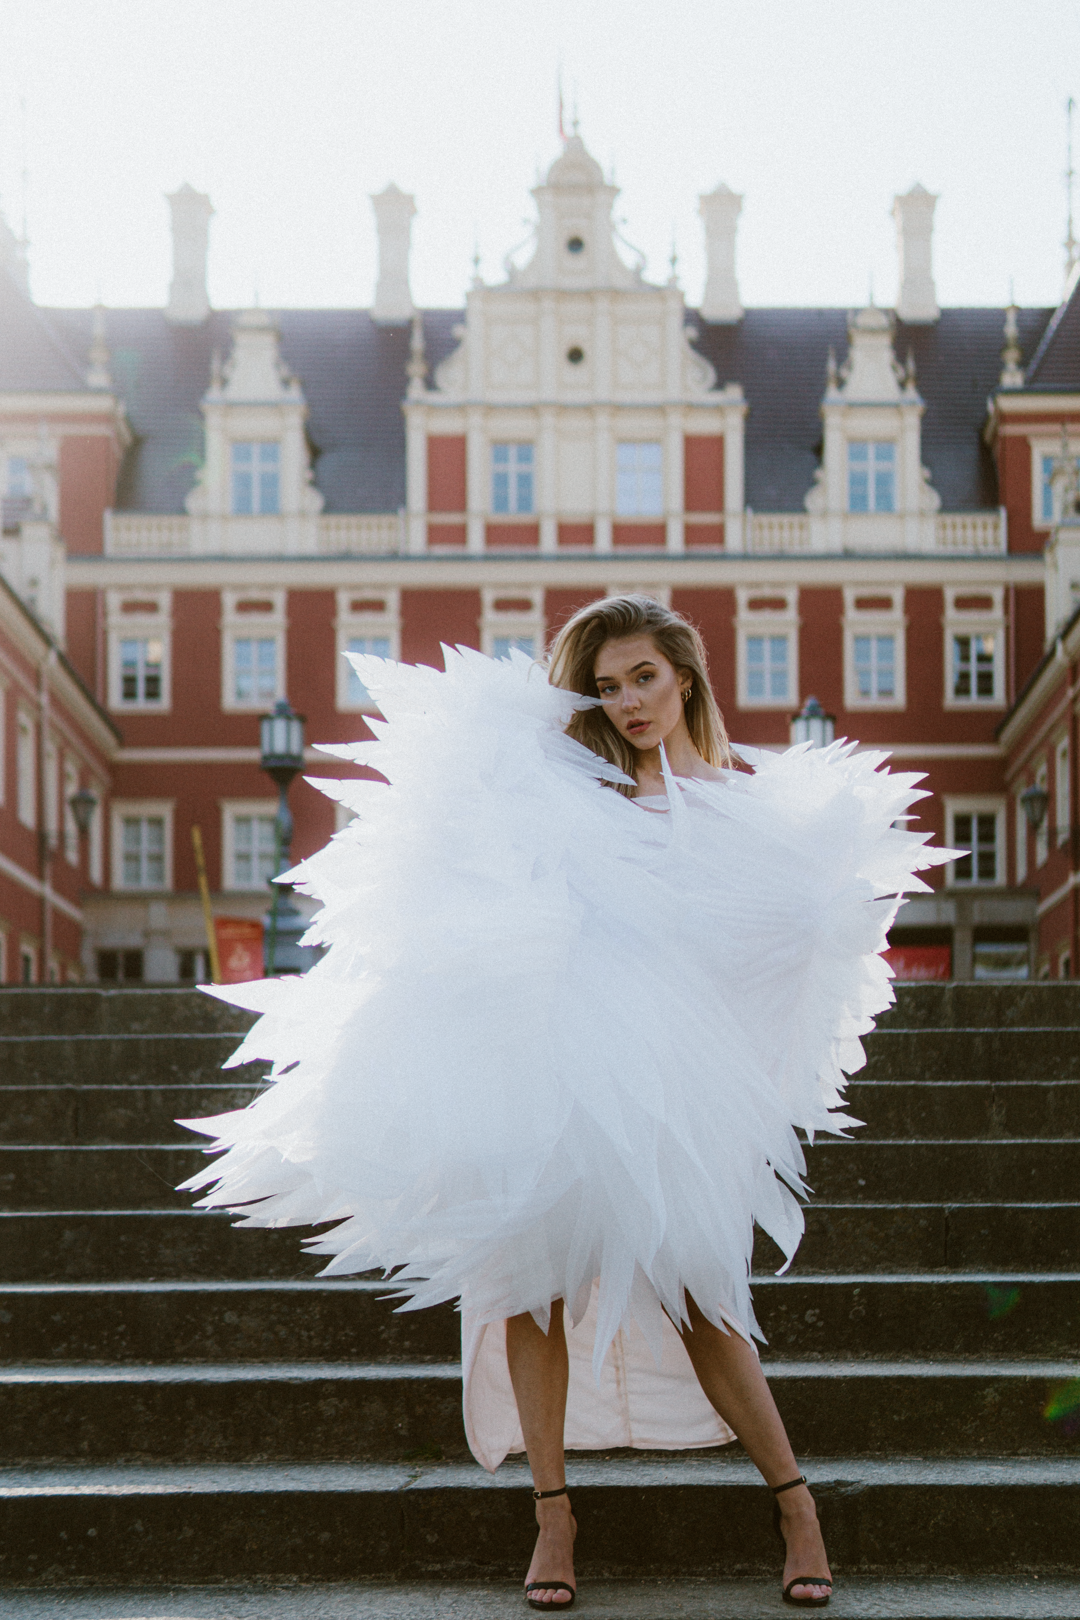 Białe skrzydła anioła do sesji zdjęciowej "marki Bogacci"